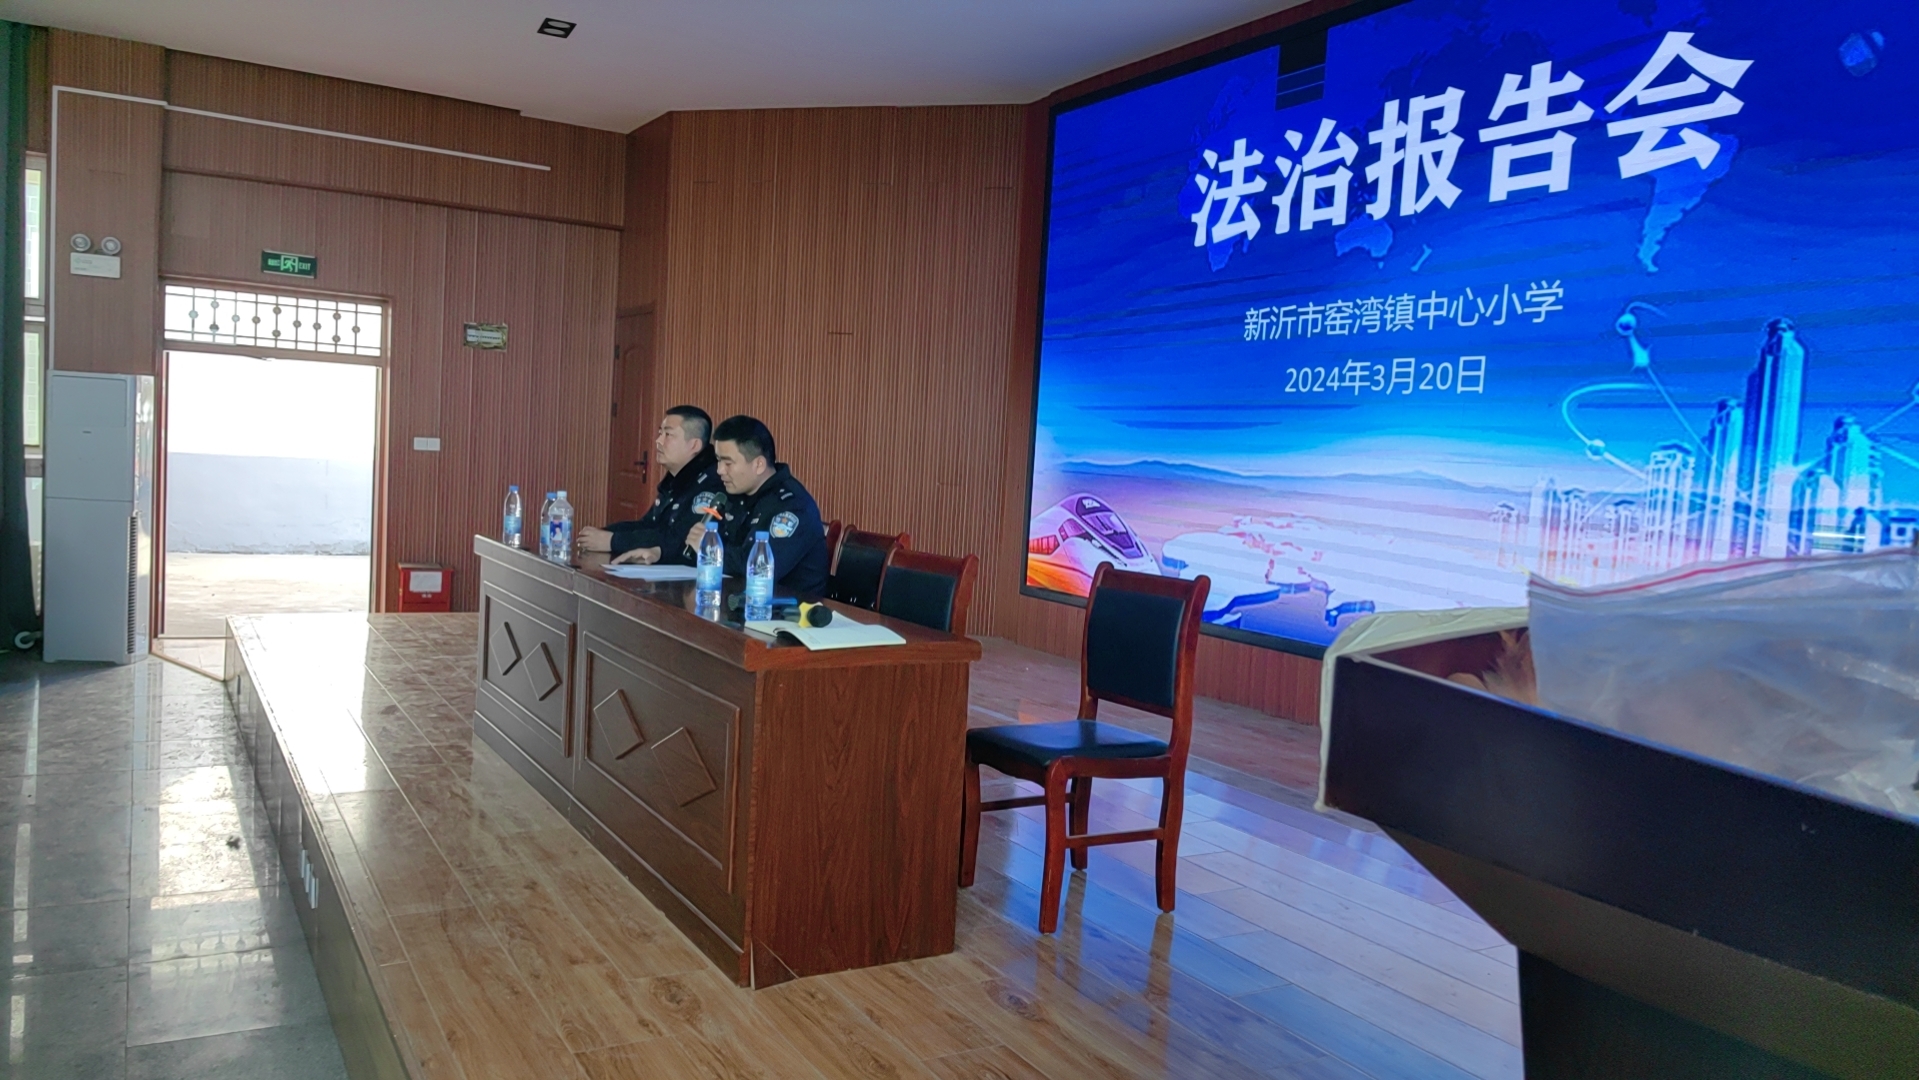 与法同行 共护未来 ——窑湾镇中心小学举行法治教育报告会